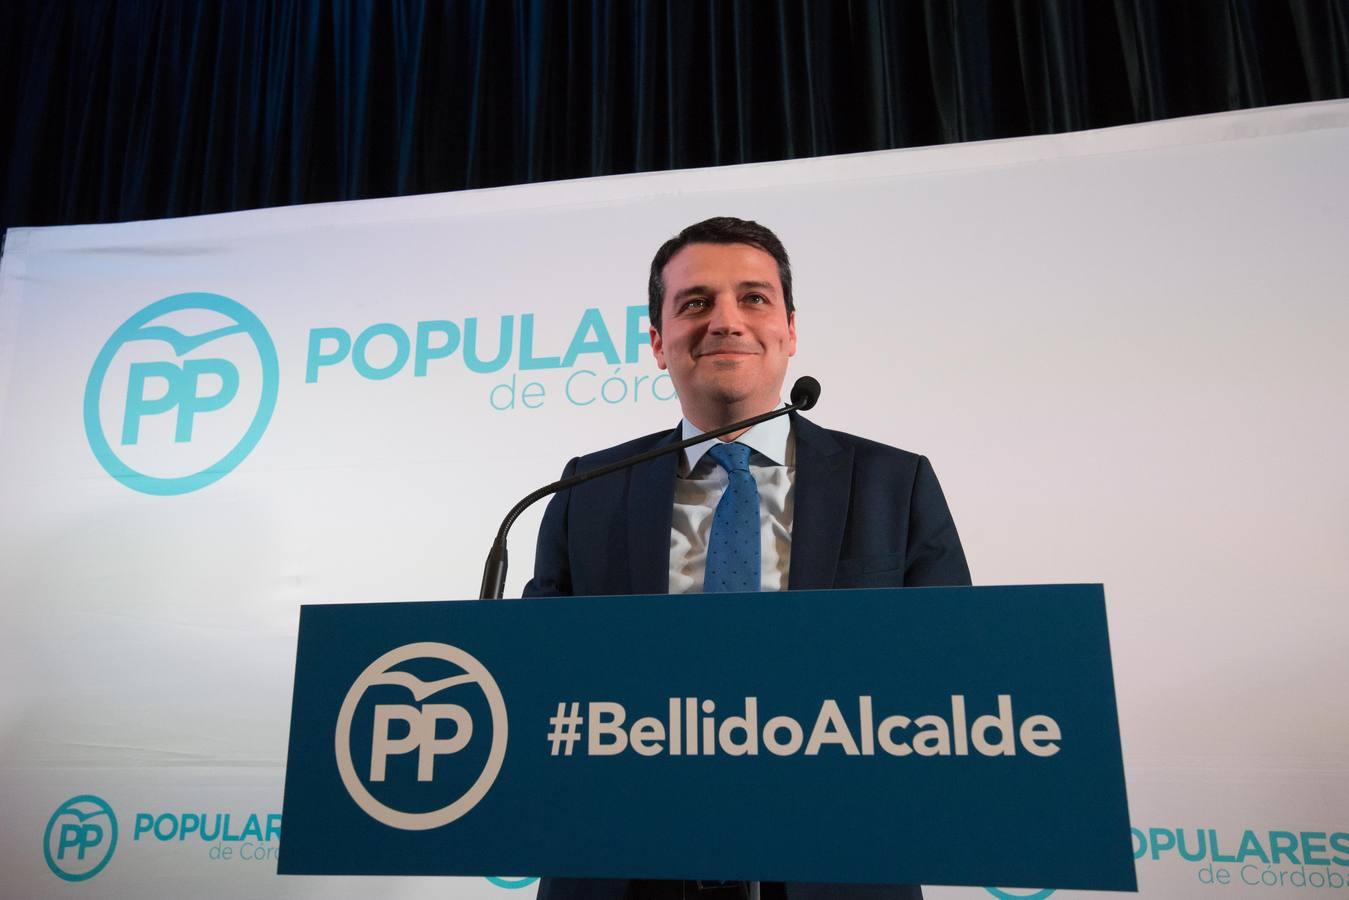 El primer acto de José María Bellido como candidato a la Alcaldía de Córdoba, en imágenes